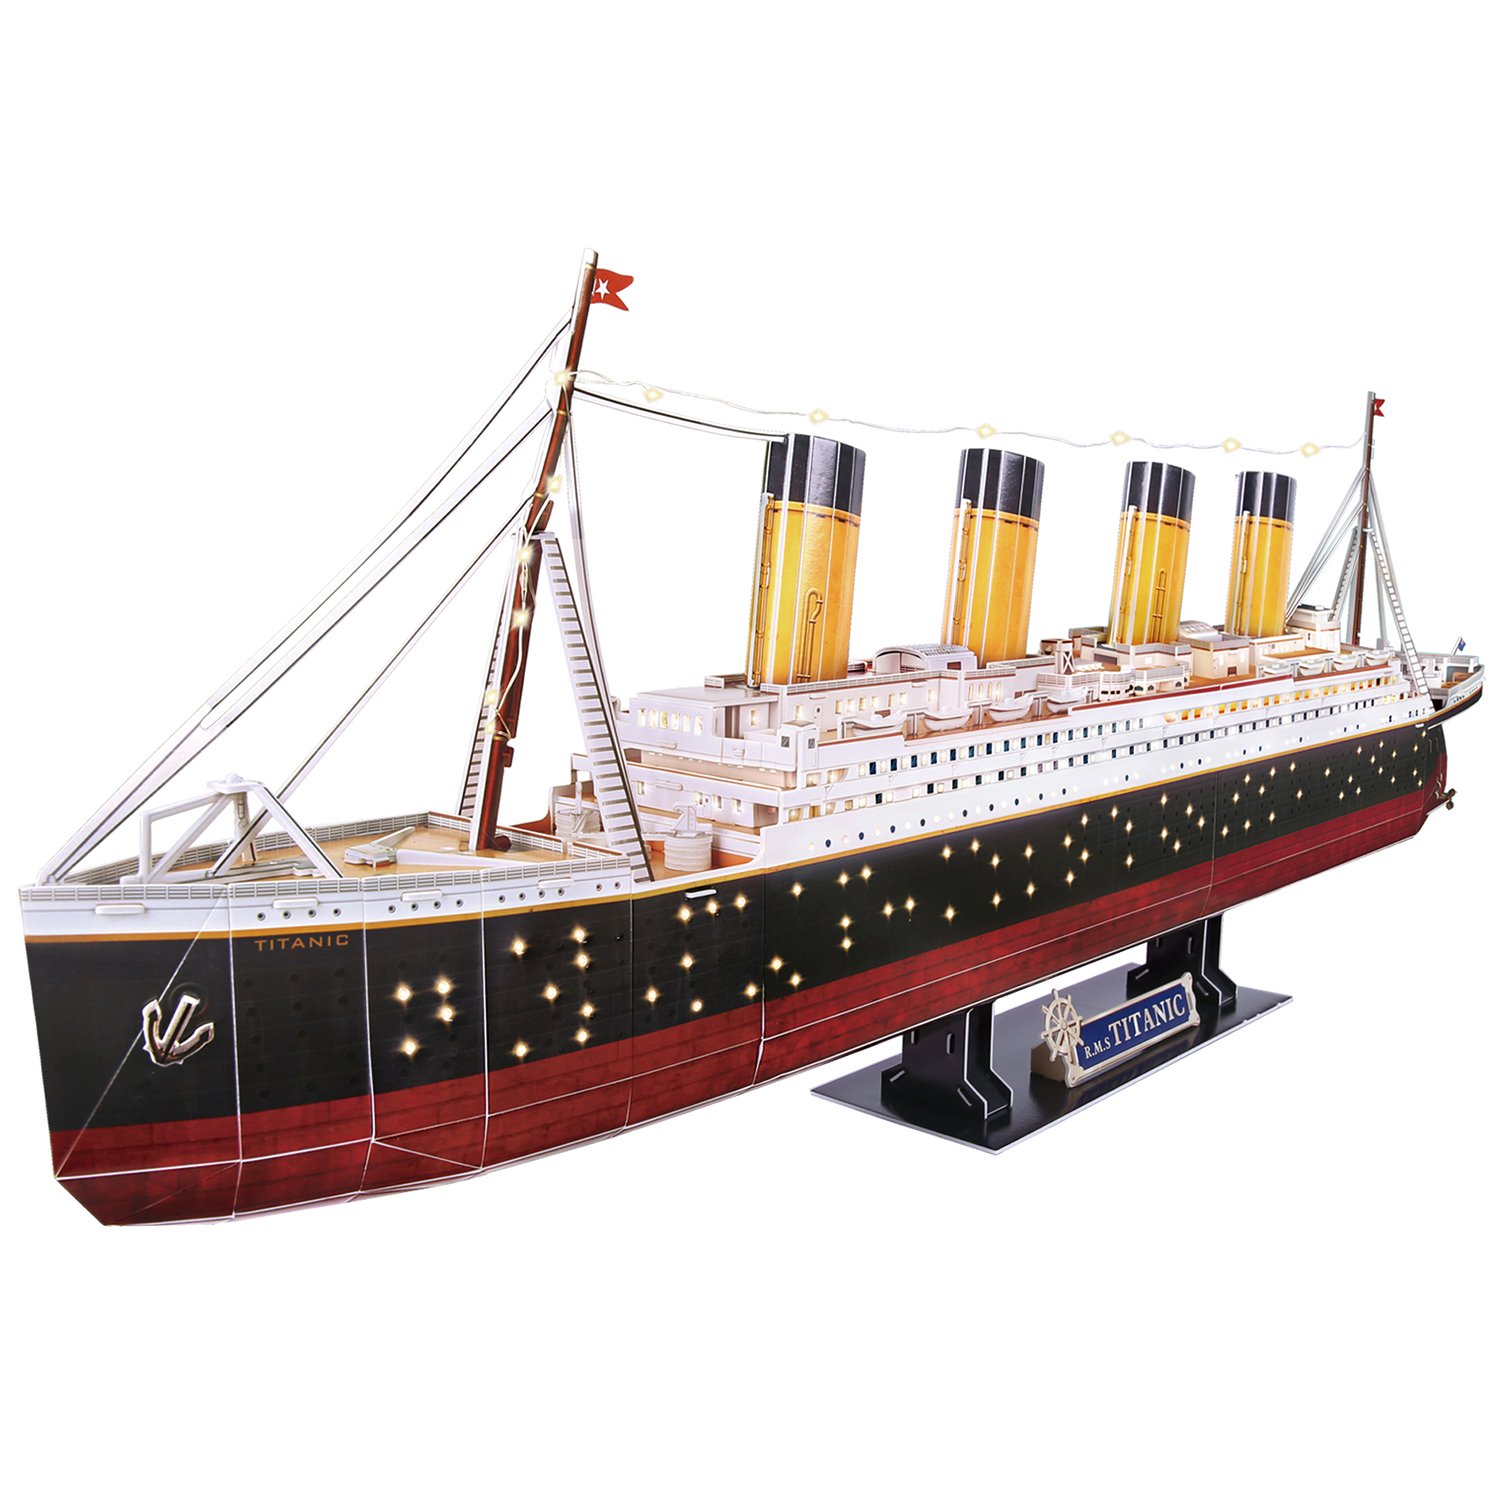 3D Пазл CubicFun Титаник с LED-подсветкой 266 элементов L521h